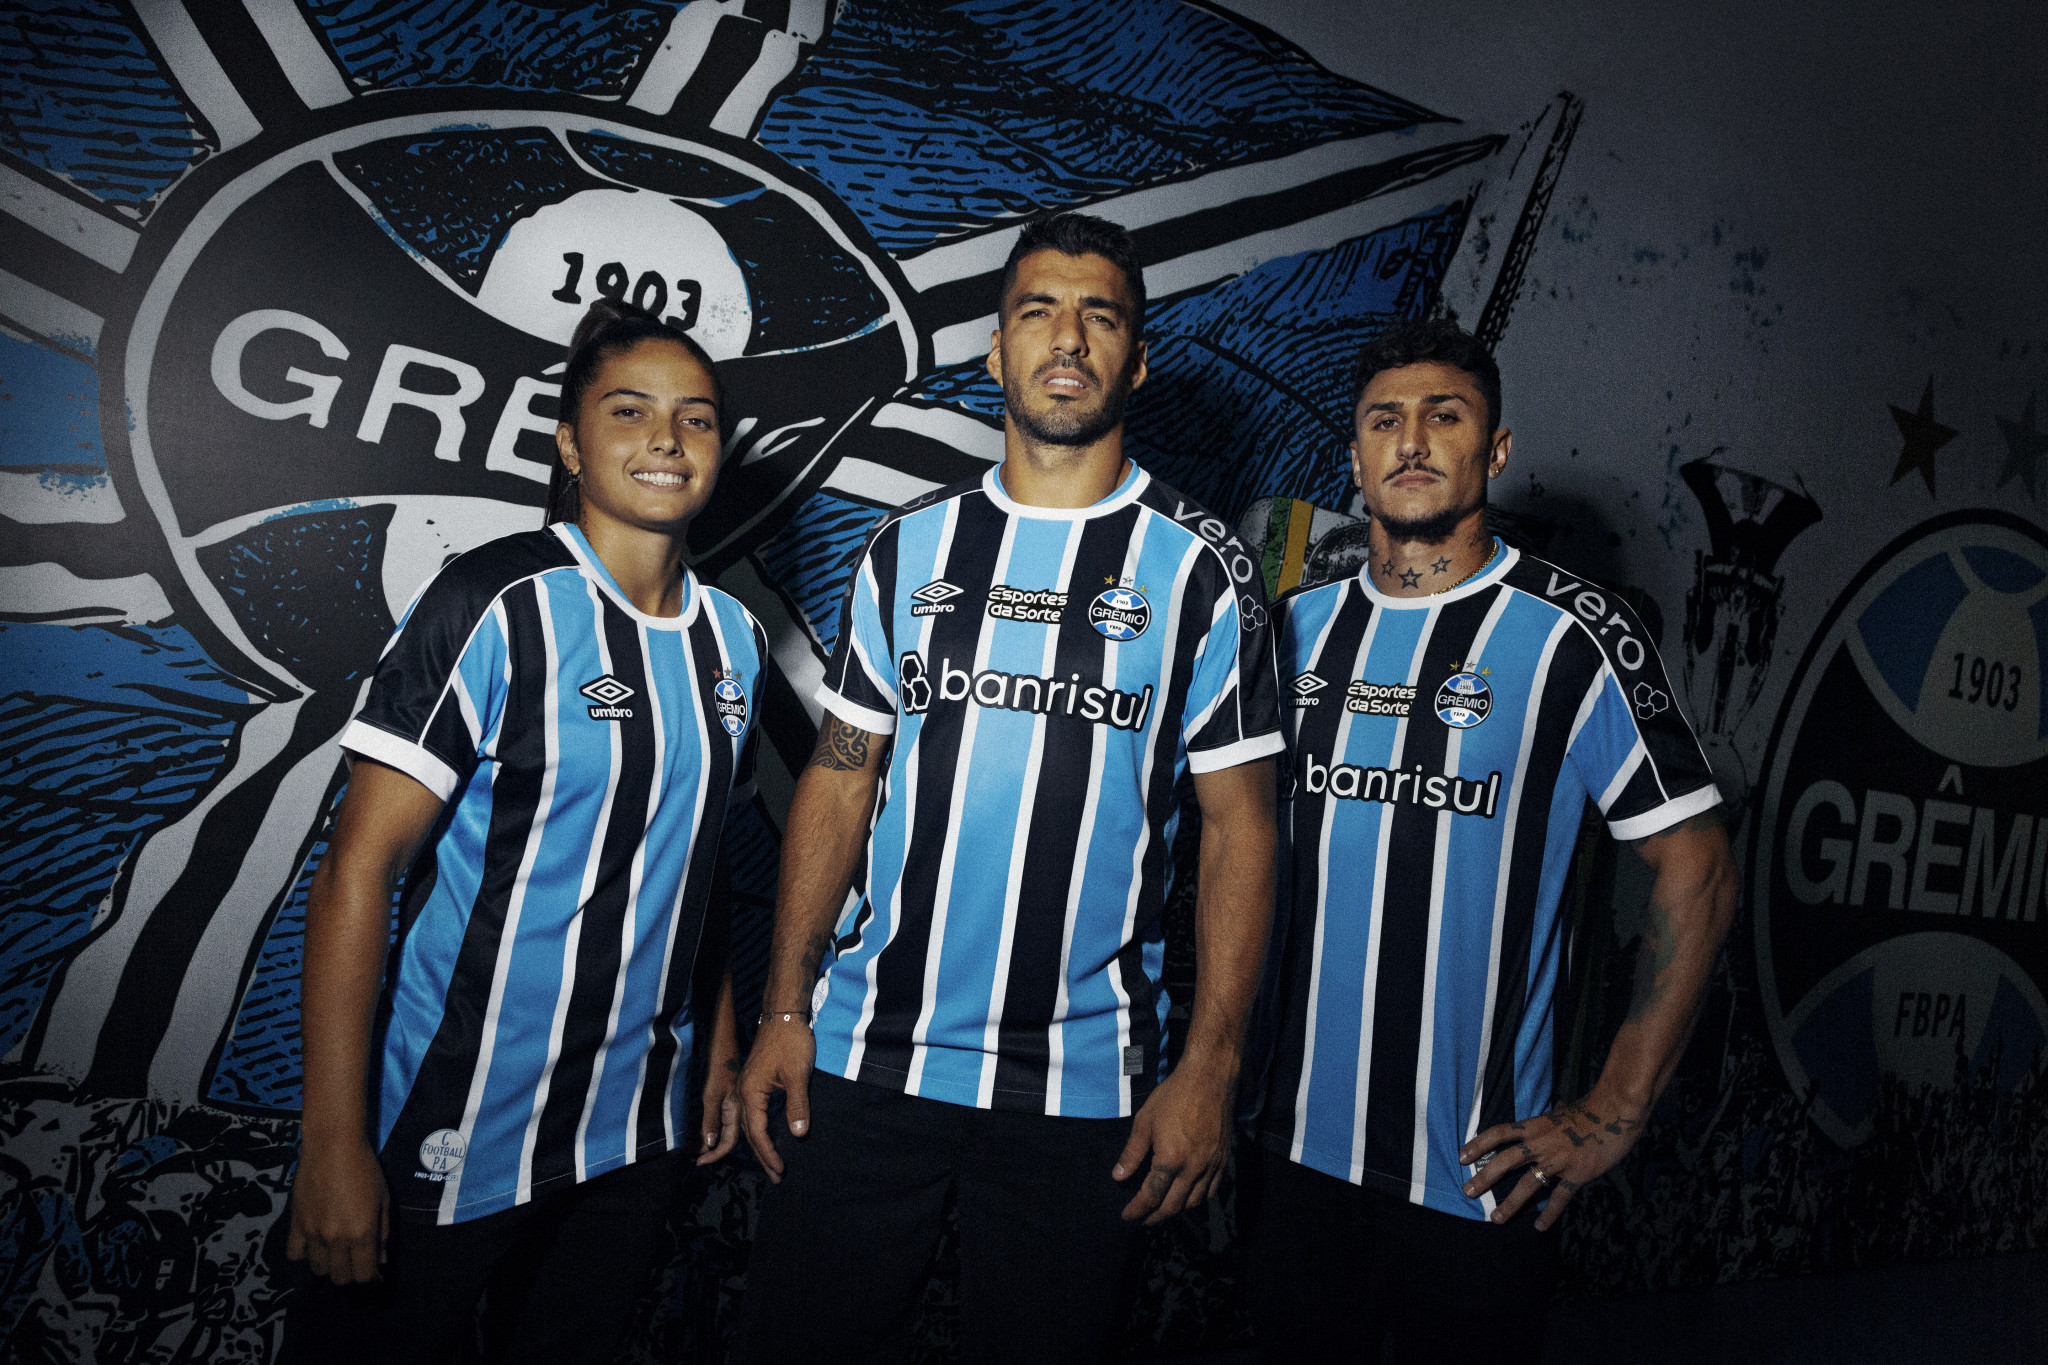 Umbro comemora 120 anos do Grêmio em novos uniformes oficiais para a  temporada